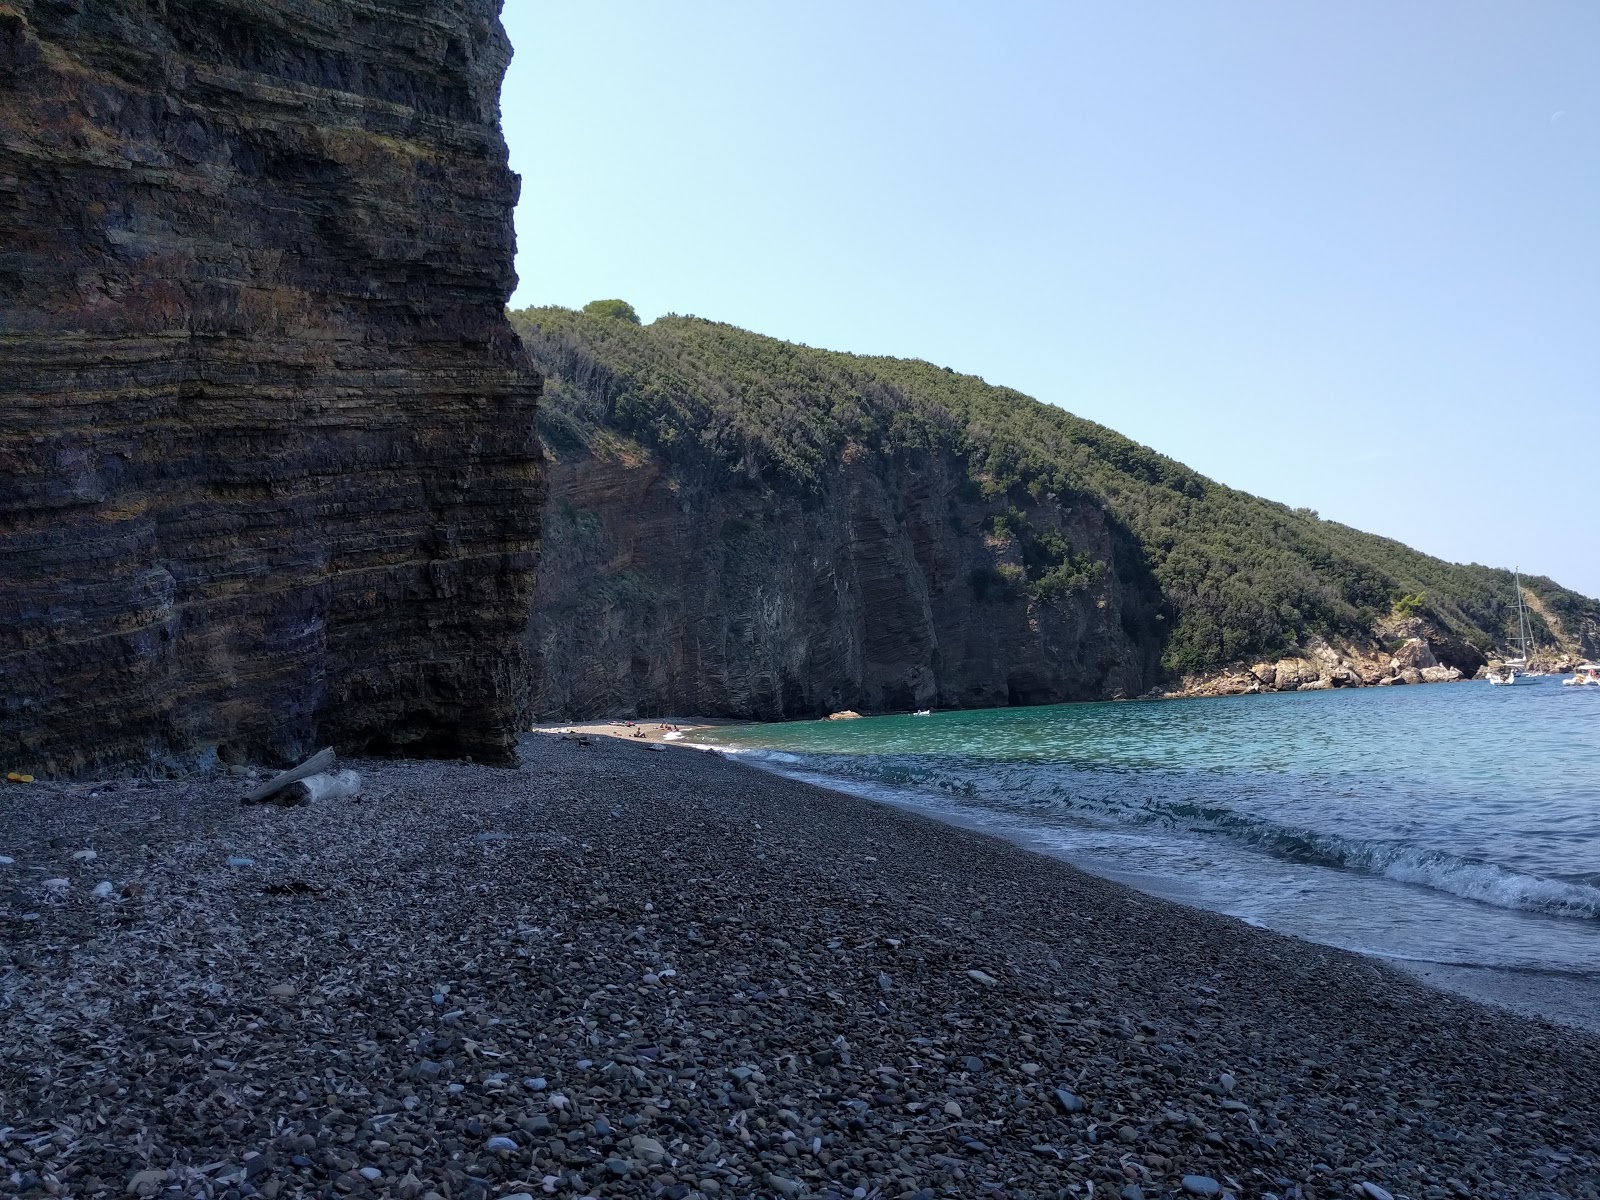 Fotografie cu Zupignano beach cu plajă spațioasă